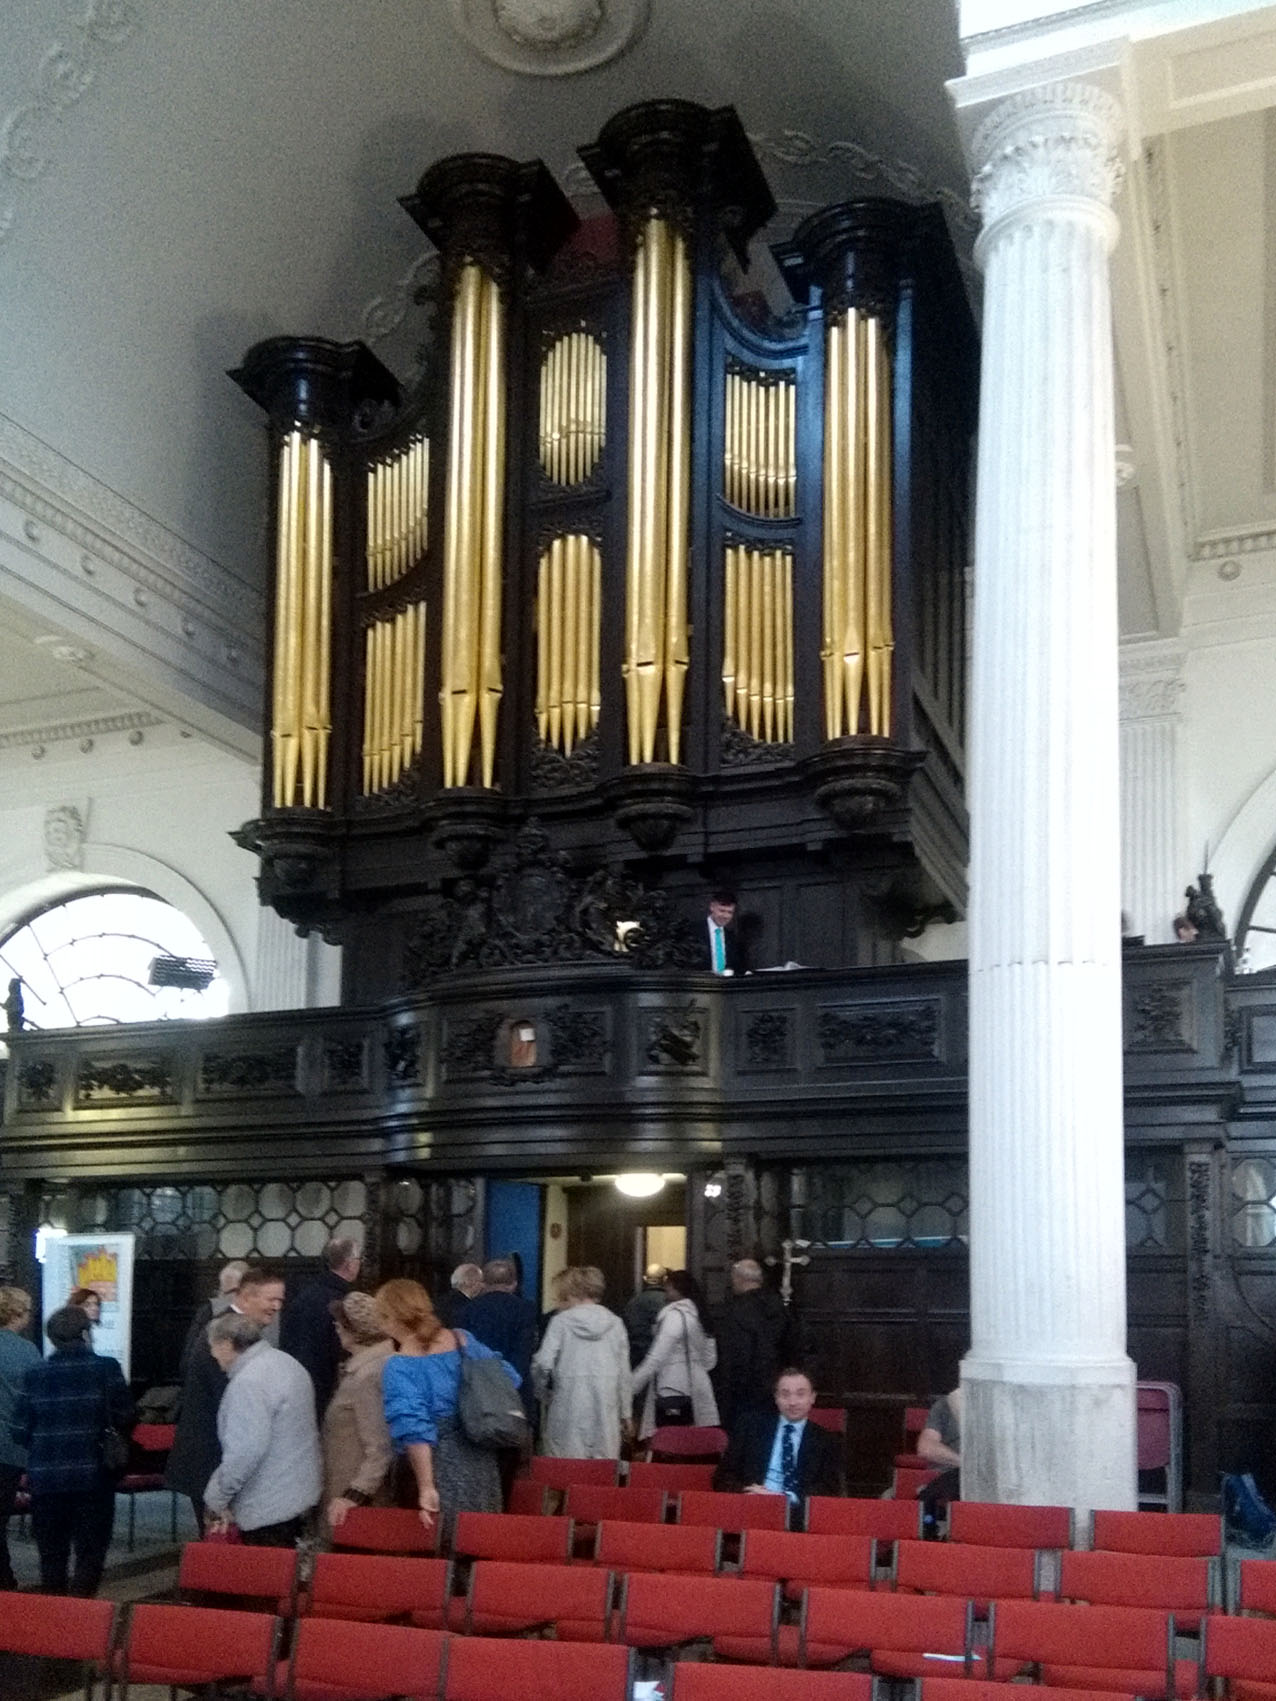 St Mary-at-Hill, London (Organ)